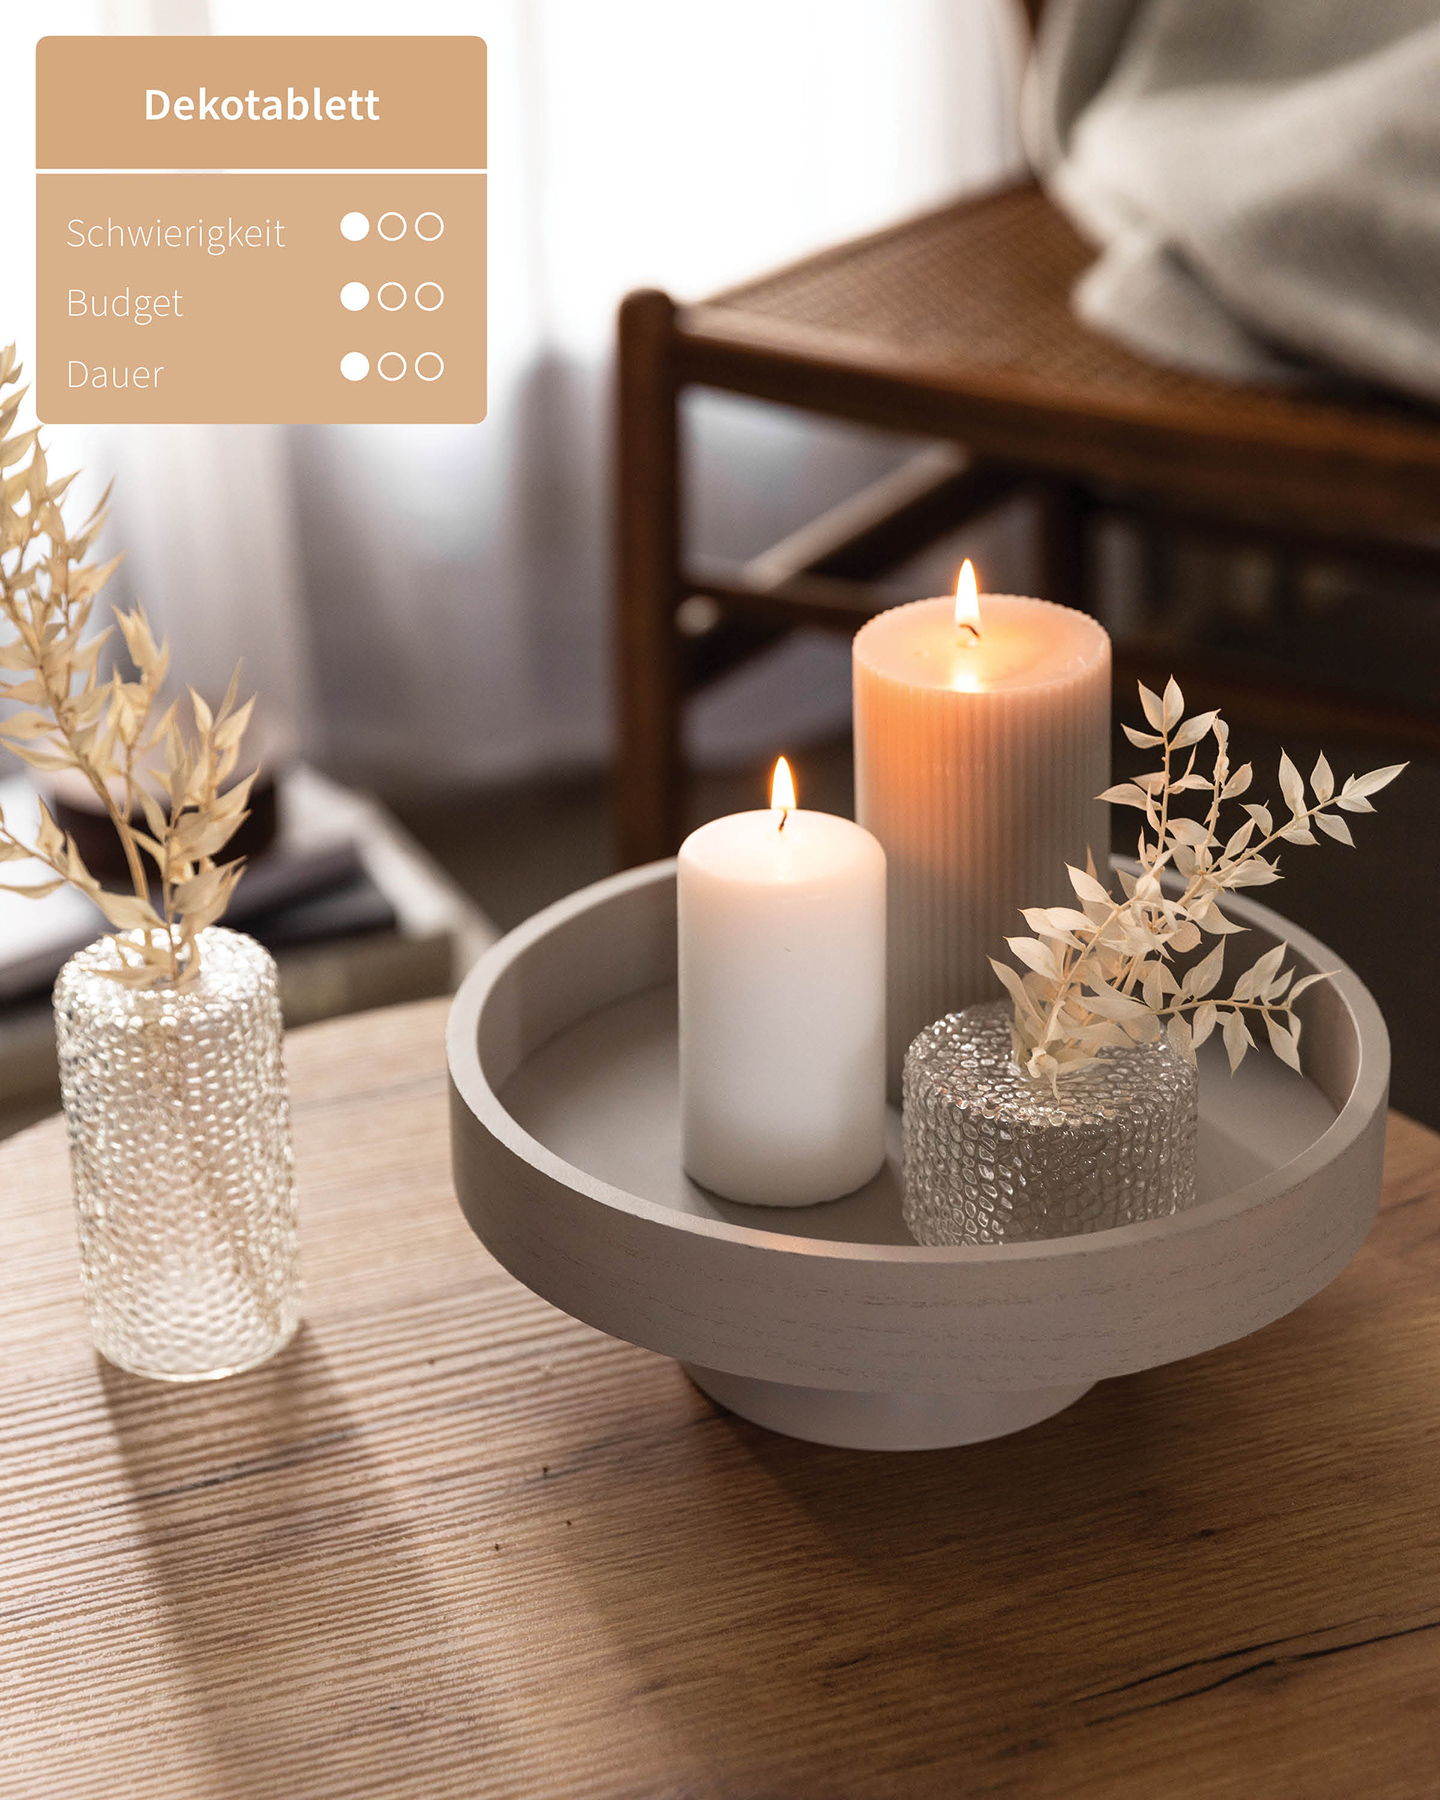 DIY-Kerzentablett aus Teller und Schale dekoriert mit Kerzen und einer kleinen Vase.